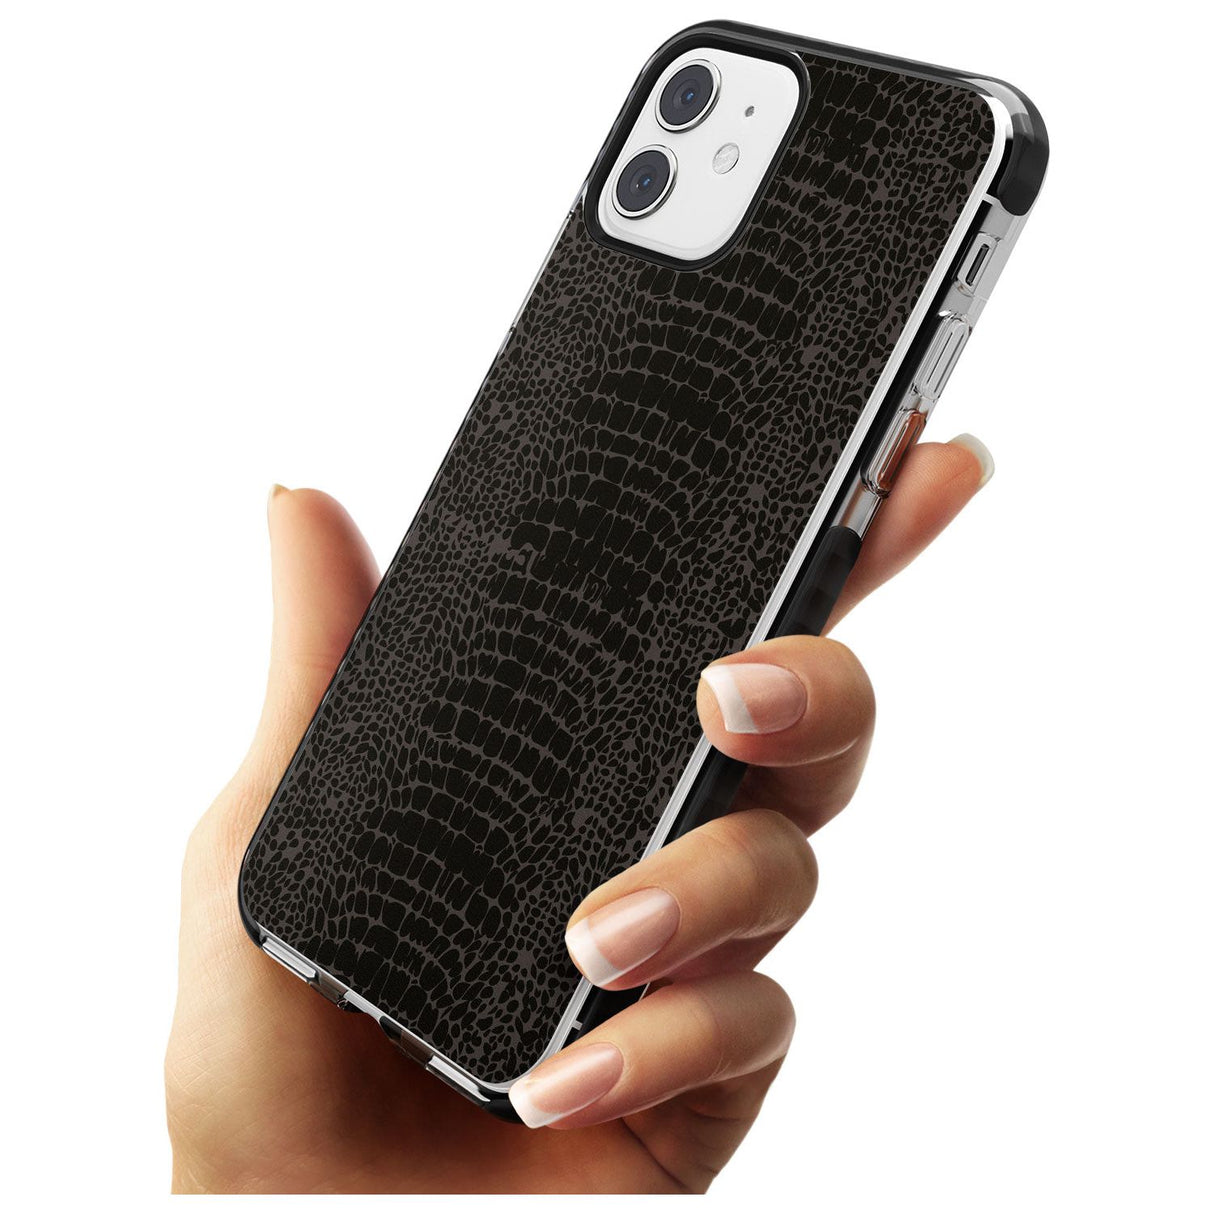 Dark Animal Print Pattern Snake Skin Black Impact Phone Case for iPhone 11